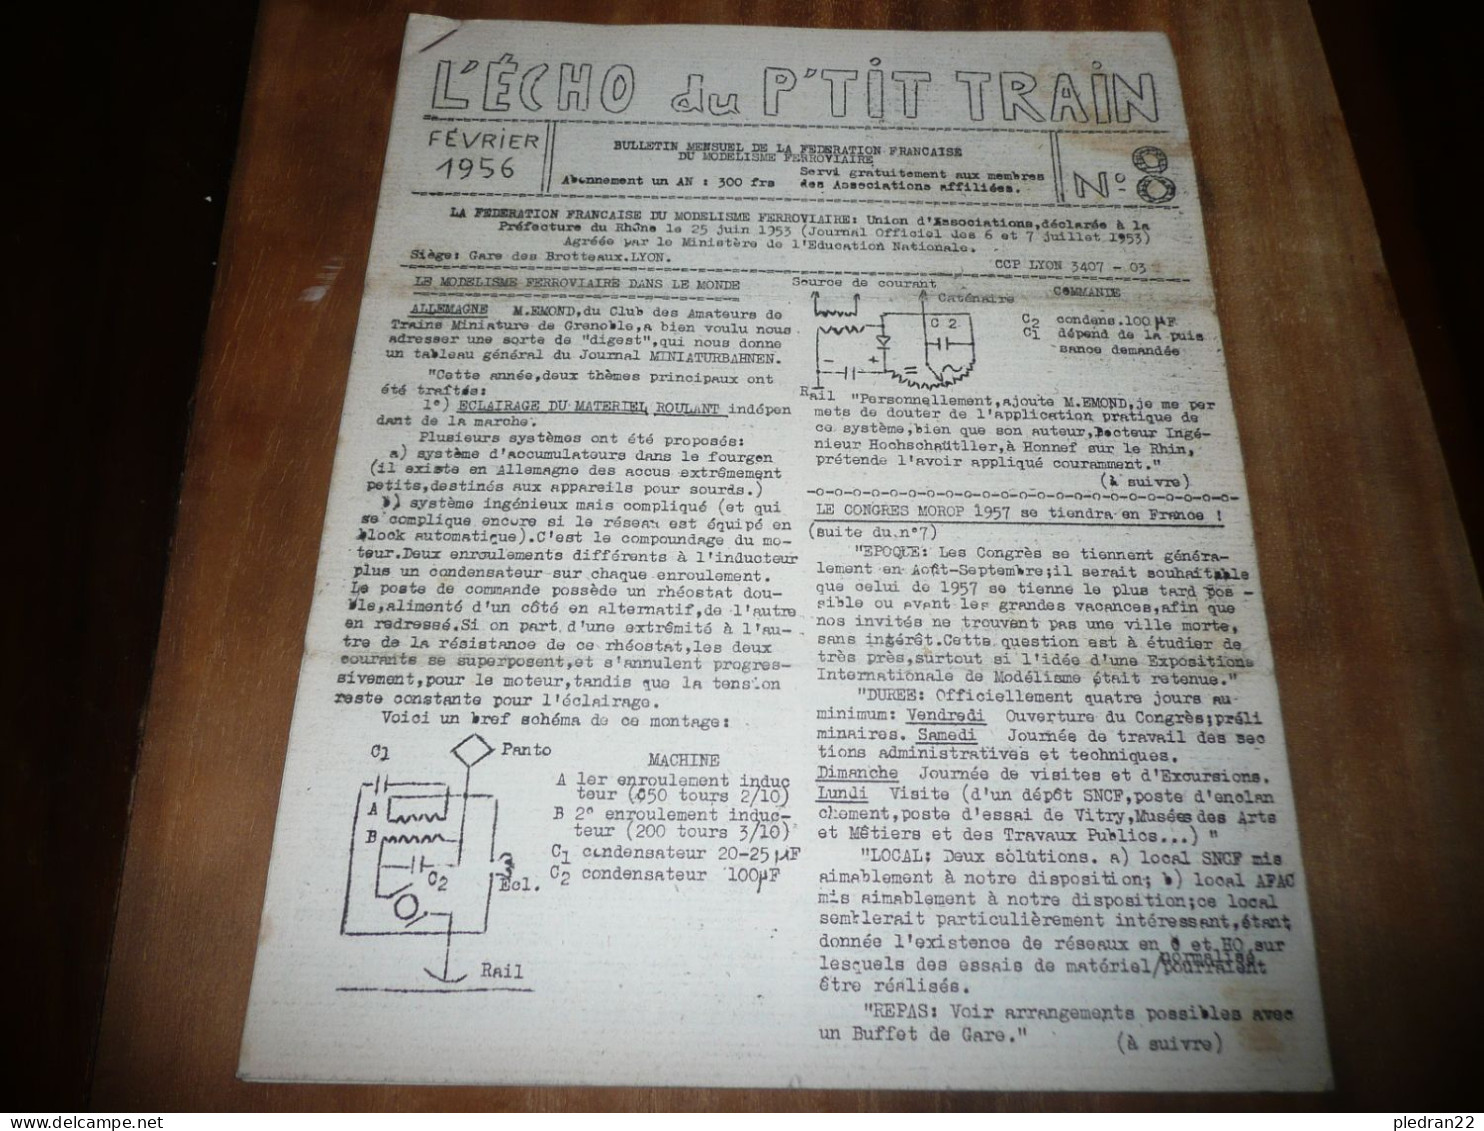 CHEMINS DE FER REVUE L'ECHO DU P'TIT TRAIN N° 8 FEVRIER 1956 MODELISME FERROVIAIRE GARE DES BROTTEAUX LYON - Chemin De Fer & Tramway